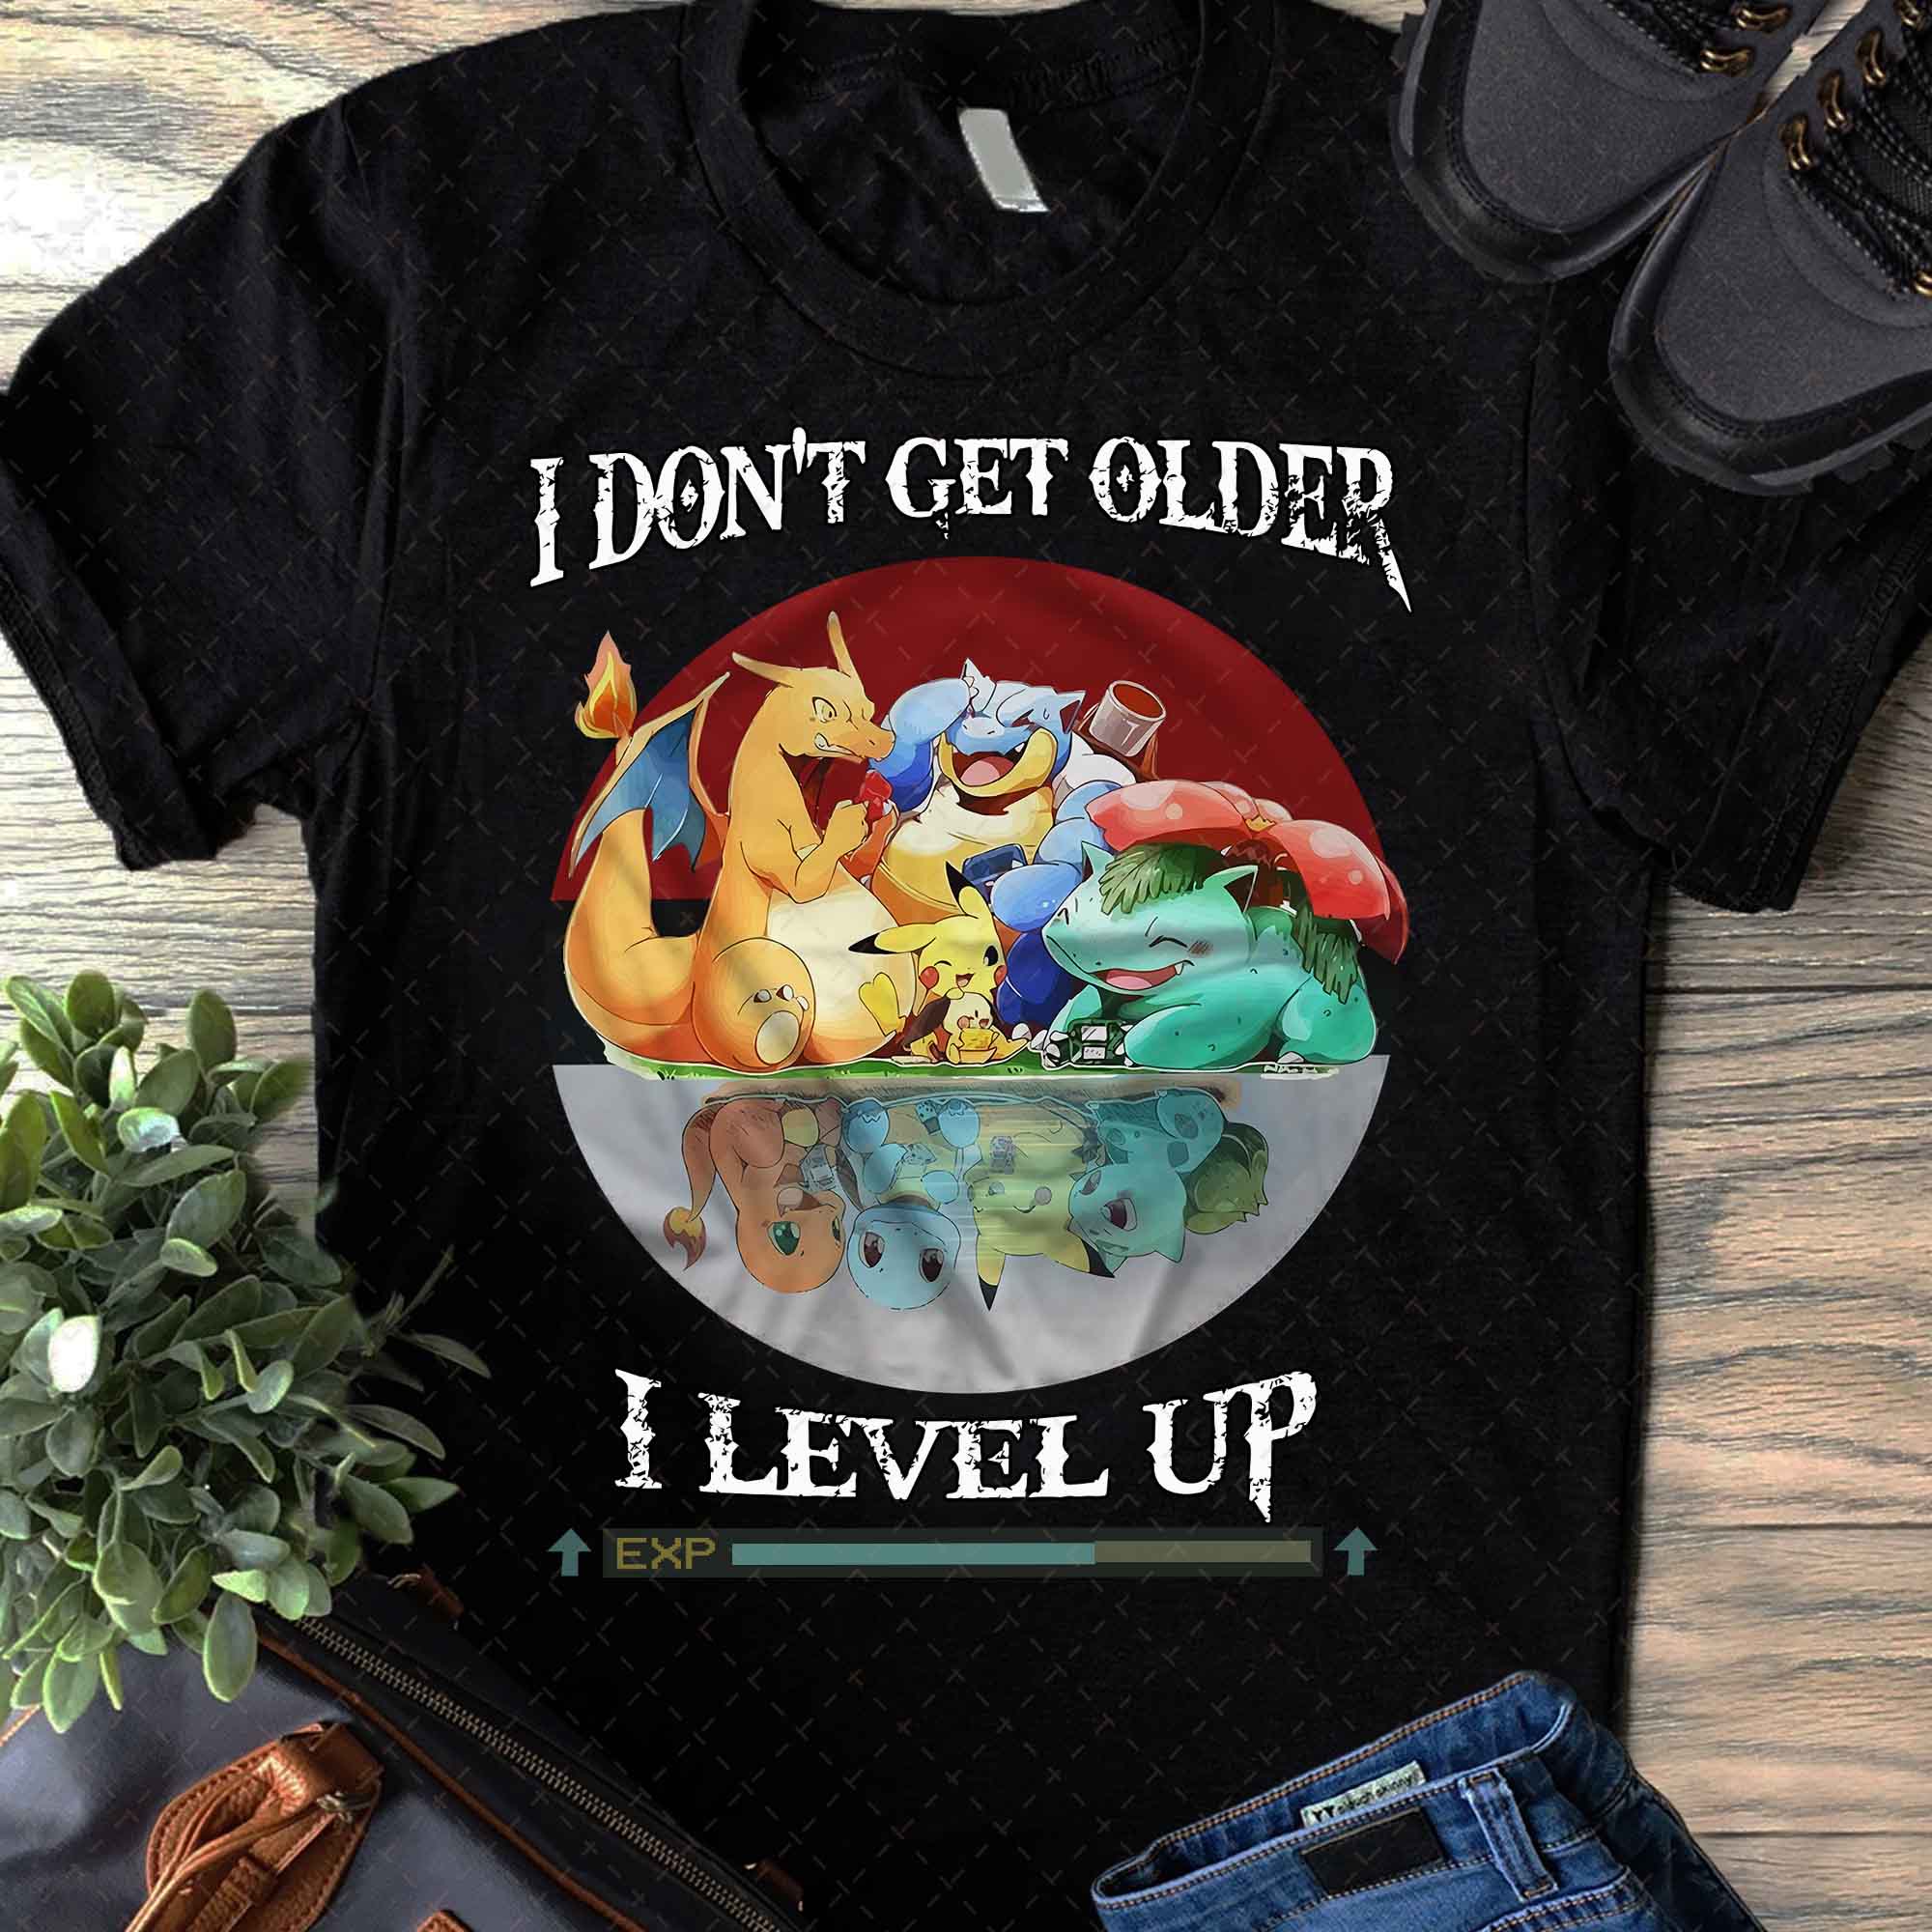 Vintage Pokemon T-Shirt, Anime Shirt, Ash Pikachu Charmander Bulbasaur, Geek Gamer tshirt